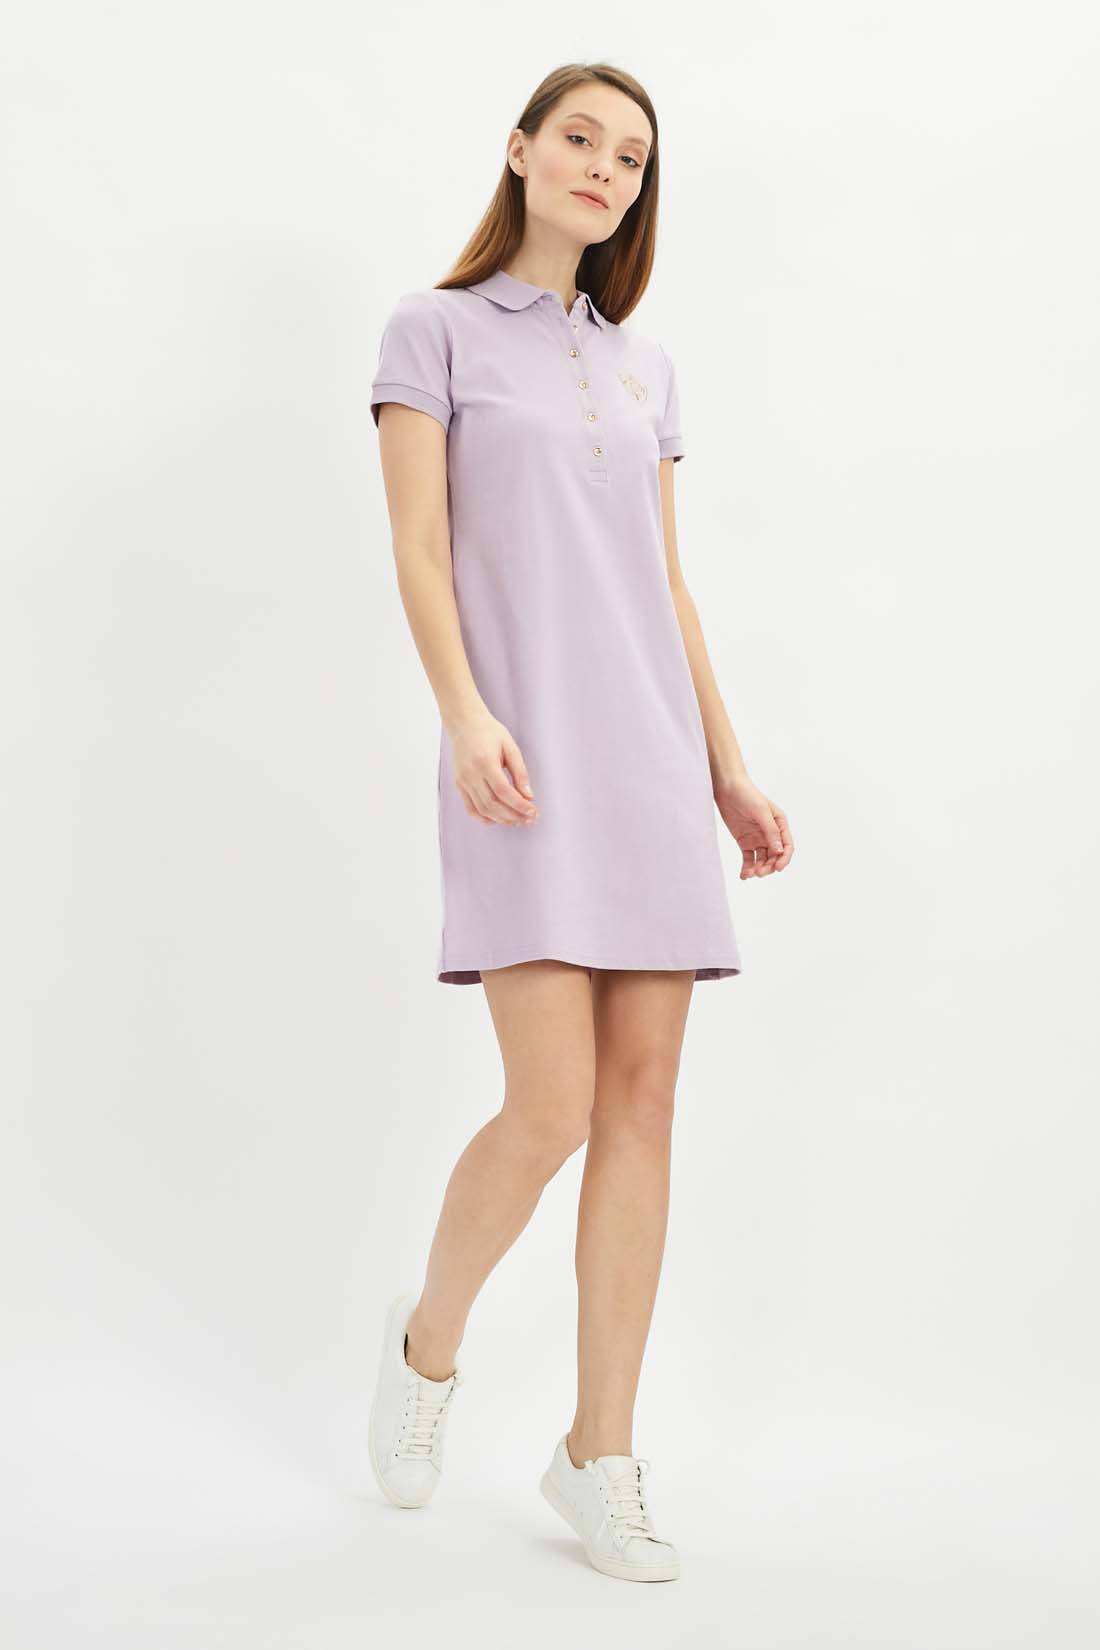 фото Платье-футболка женское baon b451201 фиолетовое l